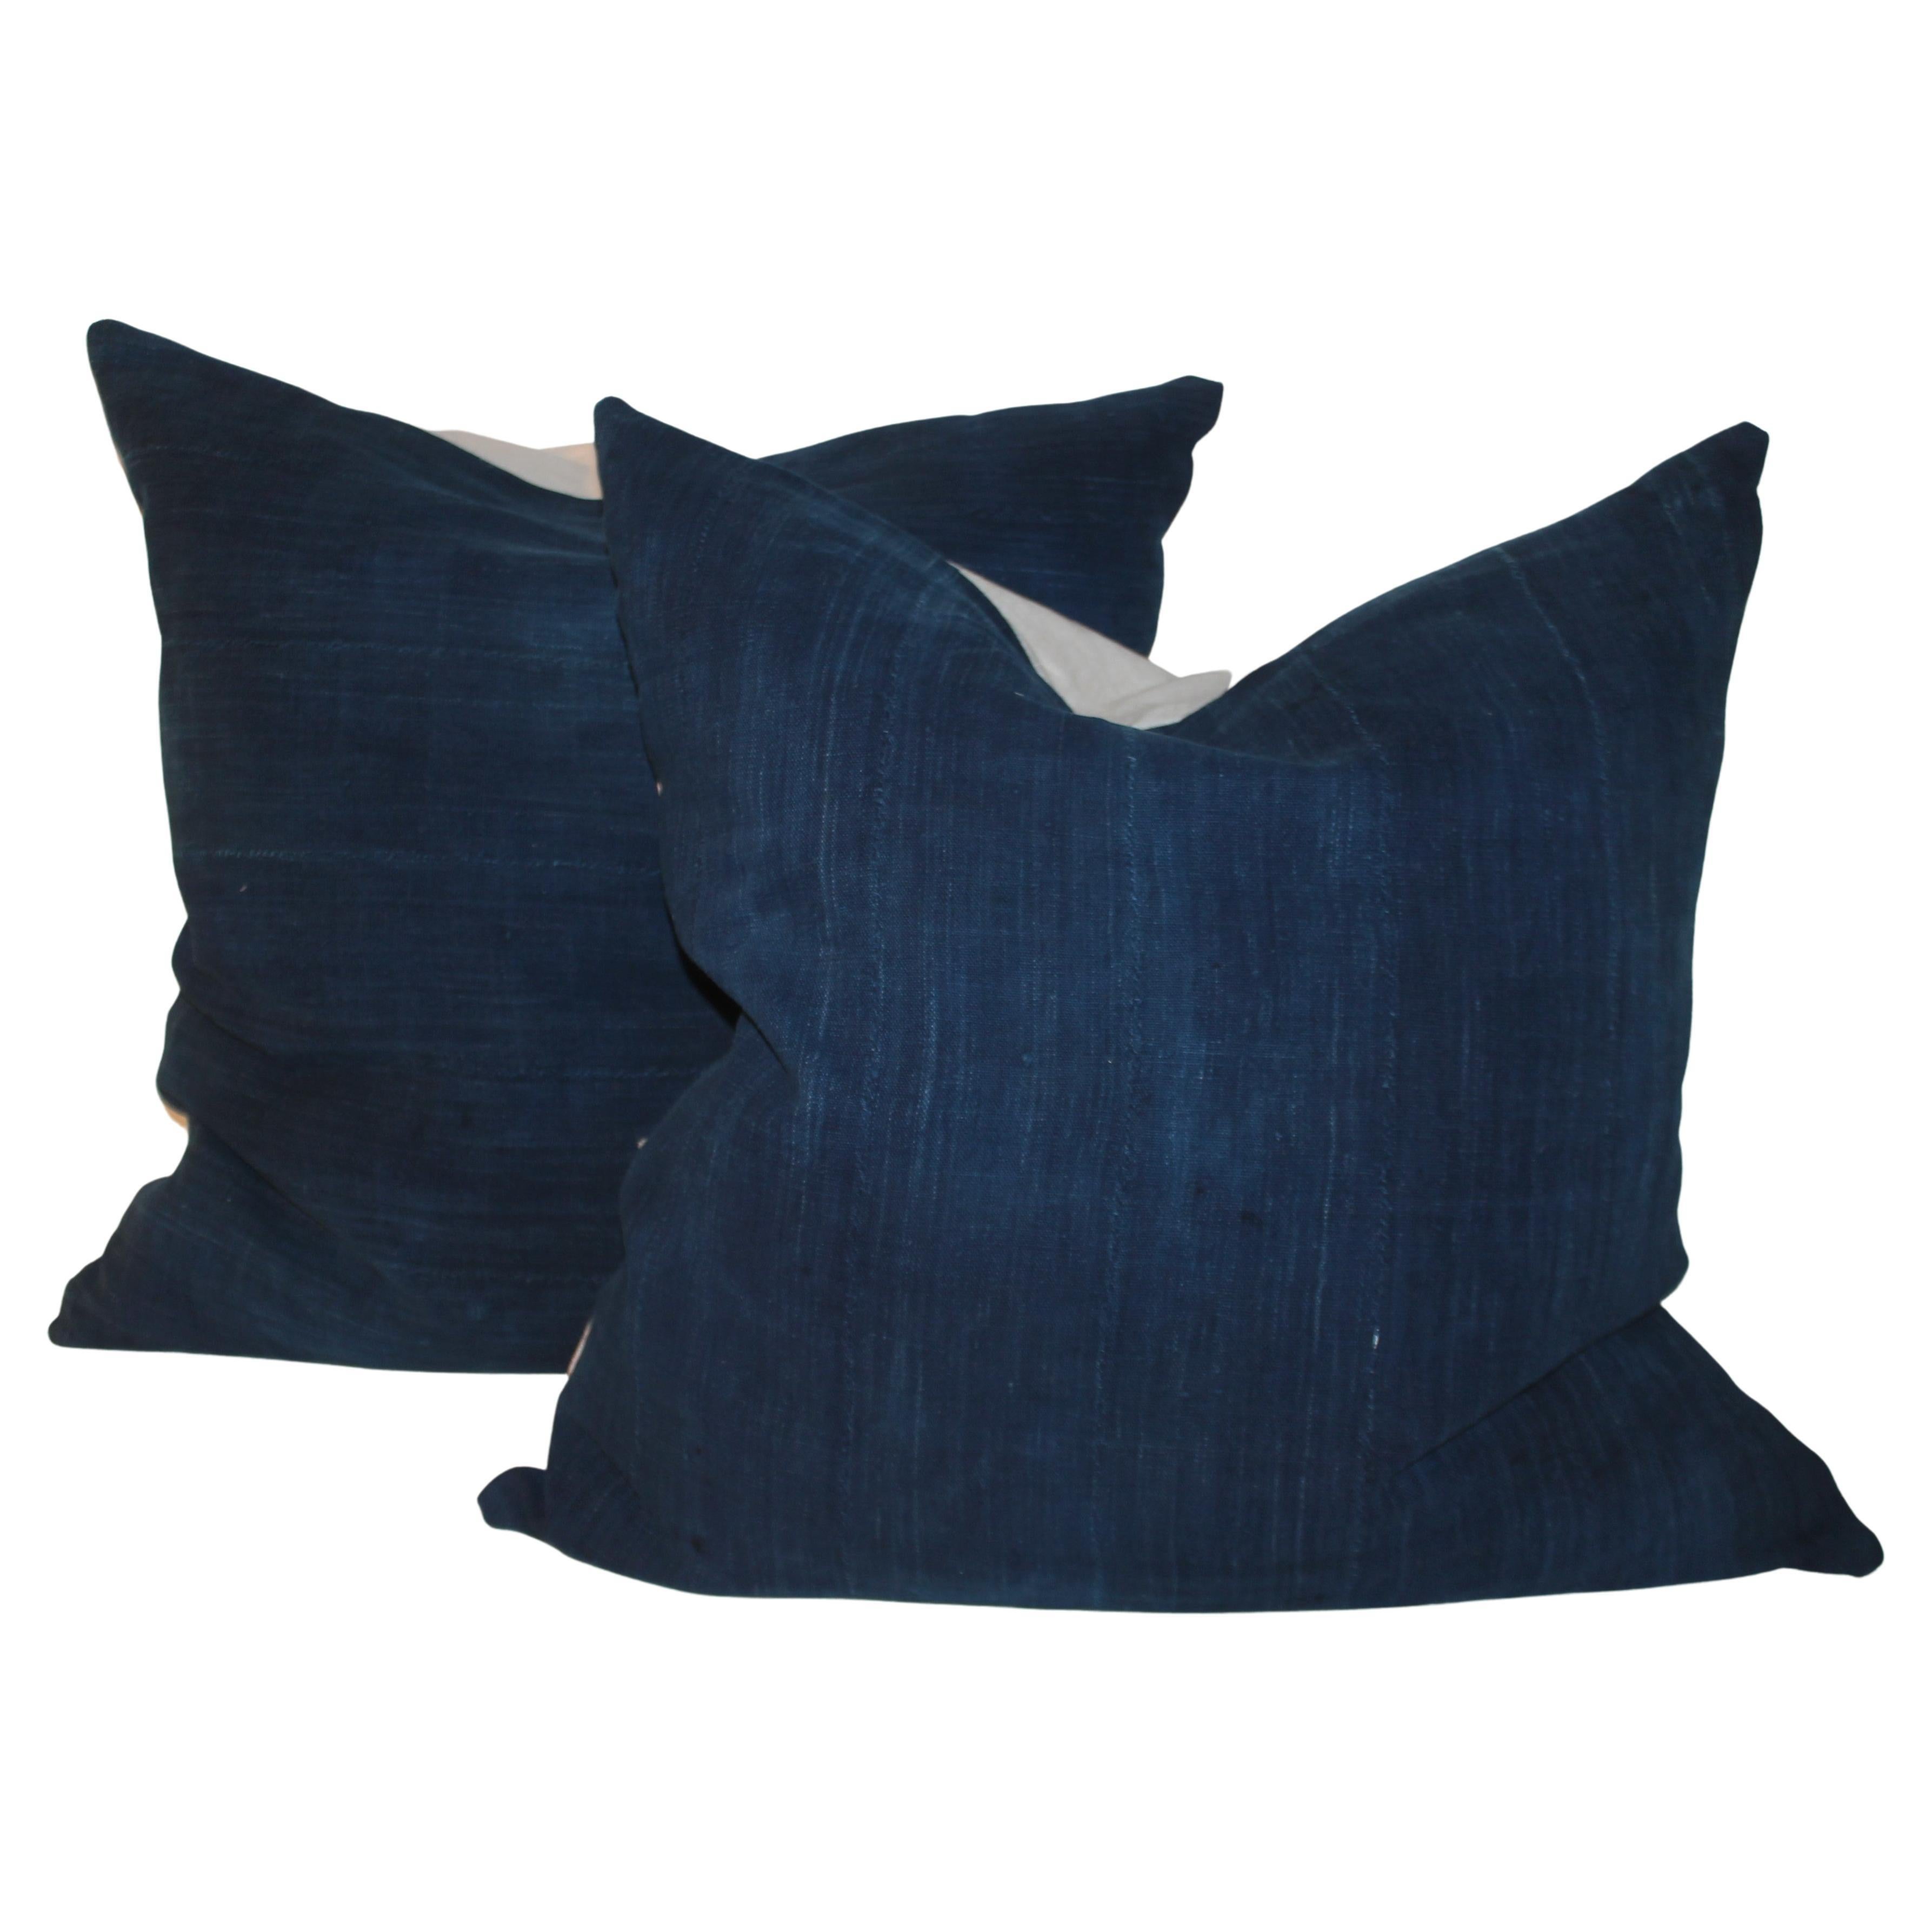 Vintage Indigo Blue Linen Pillows, Pair